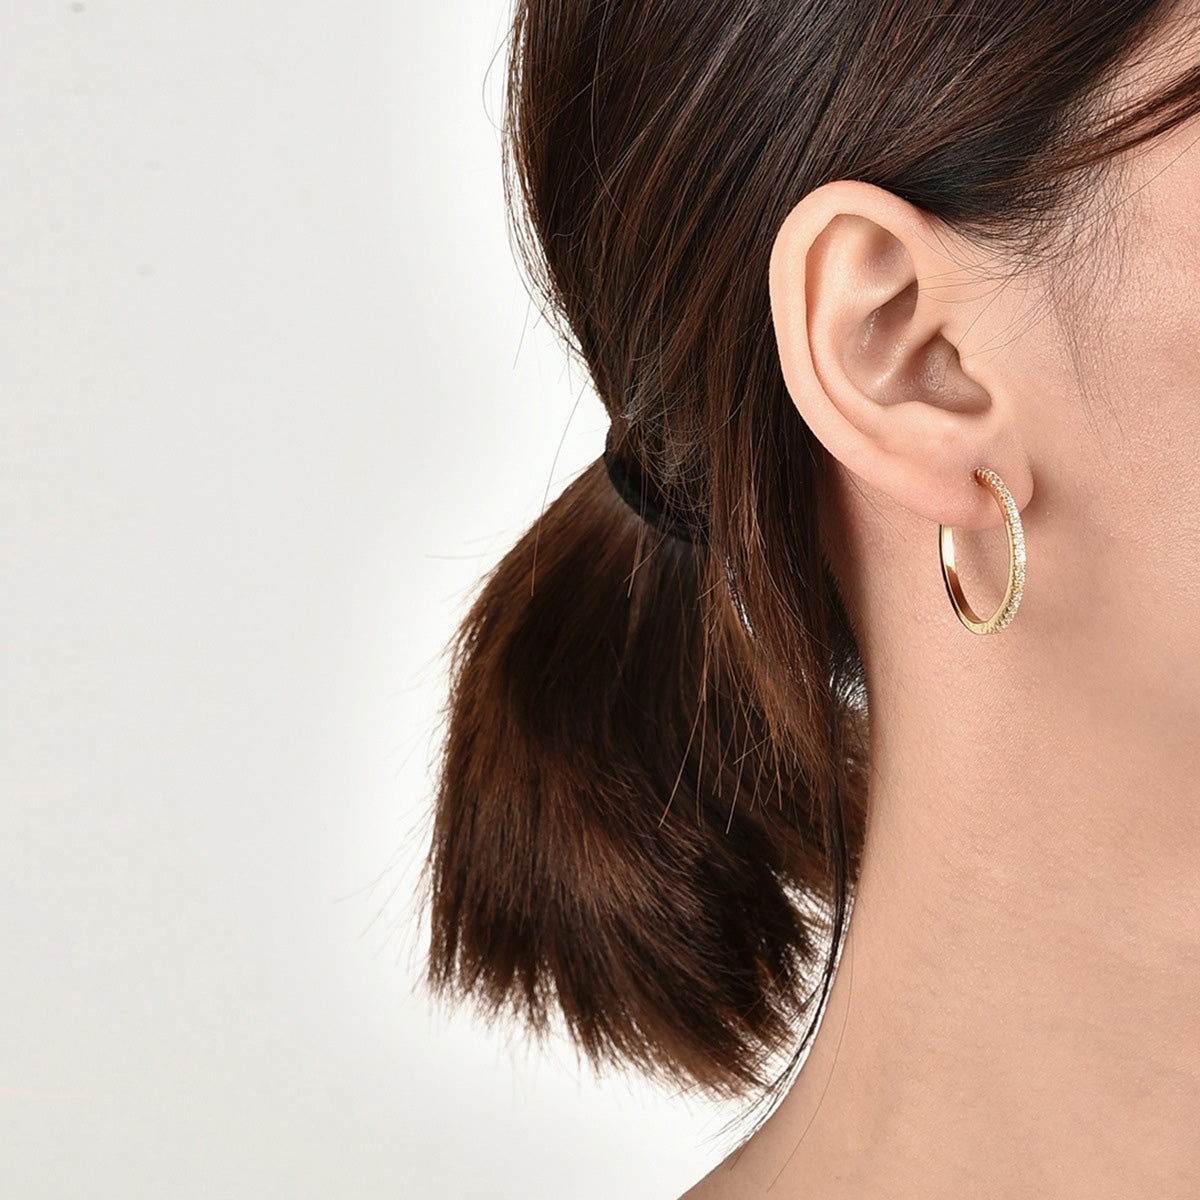 Shimmering earrings